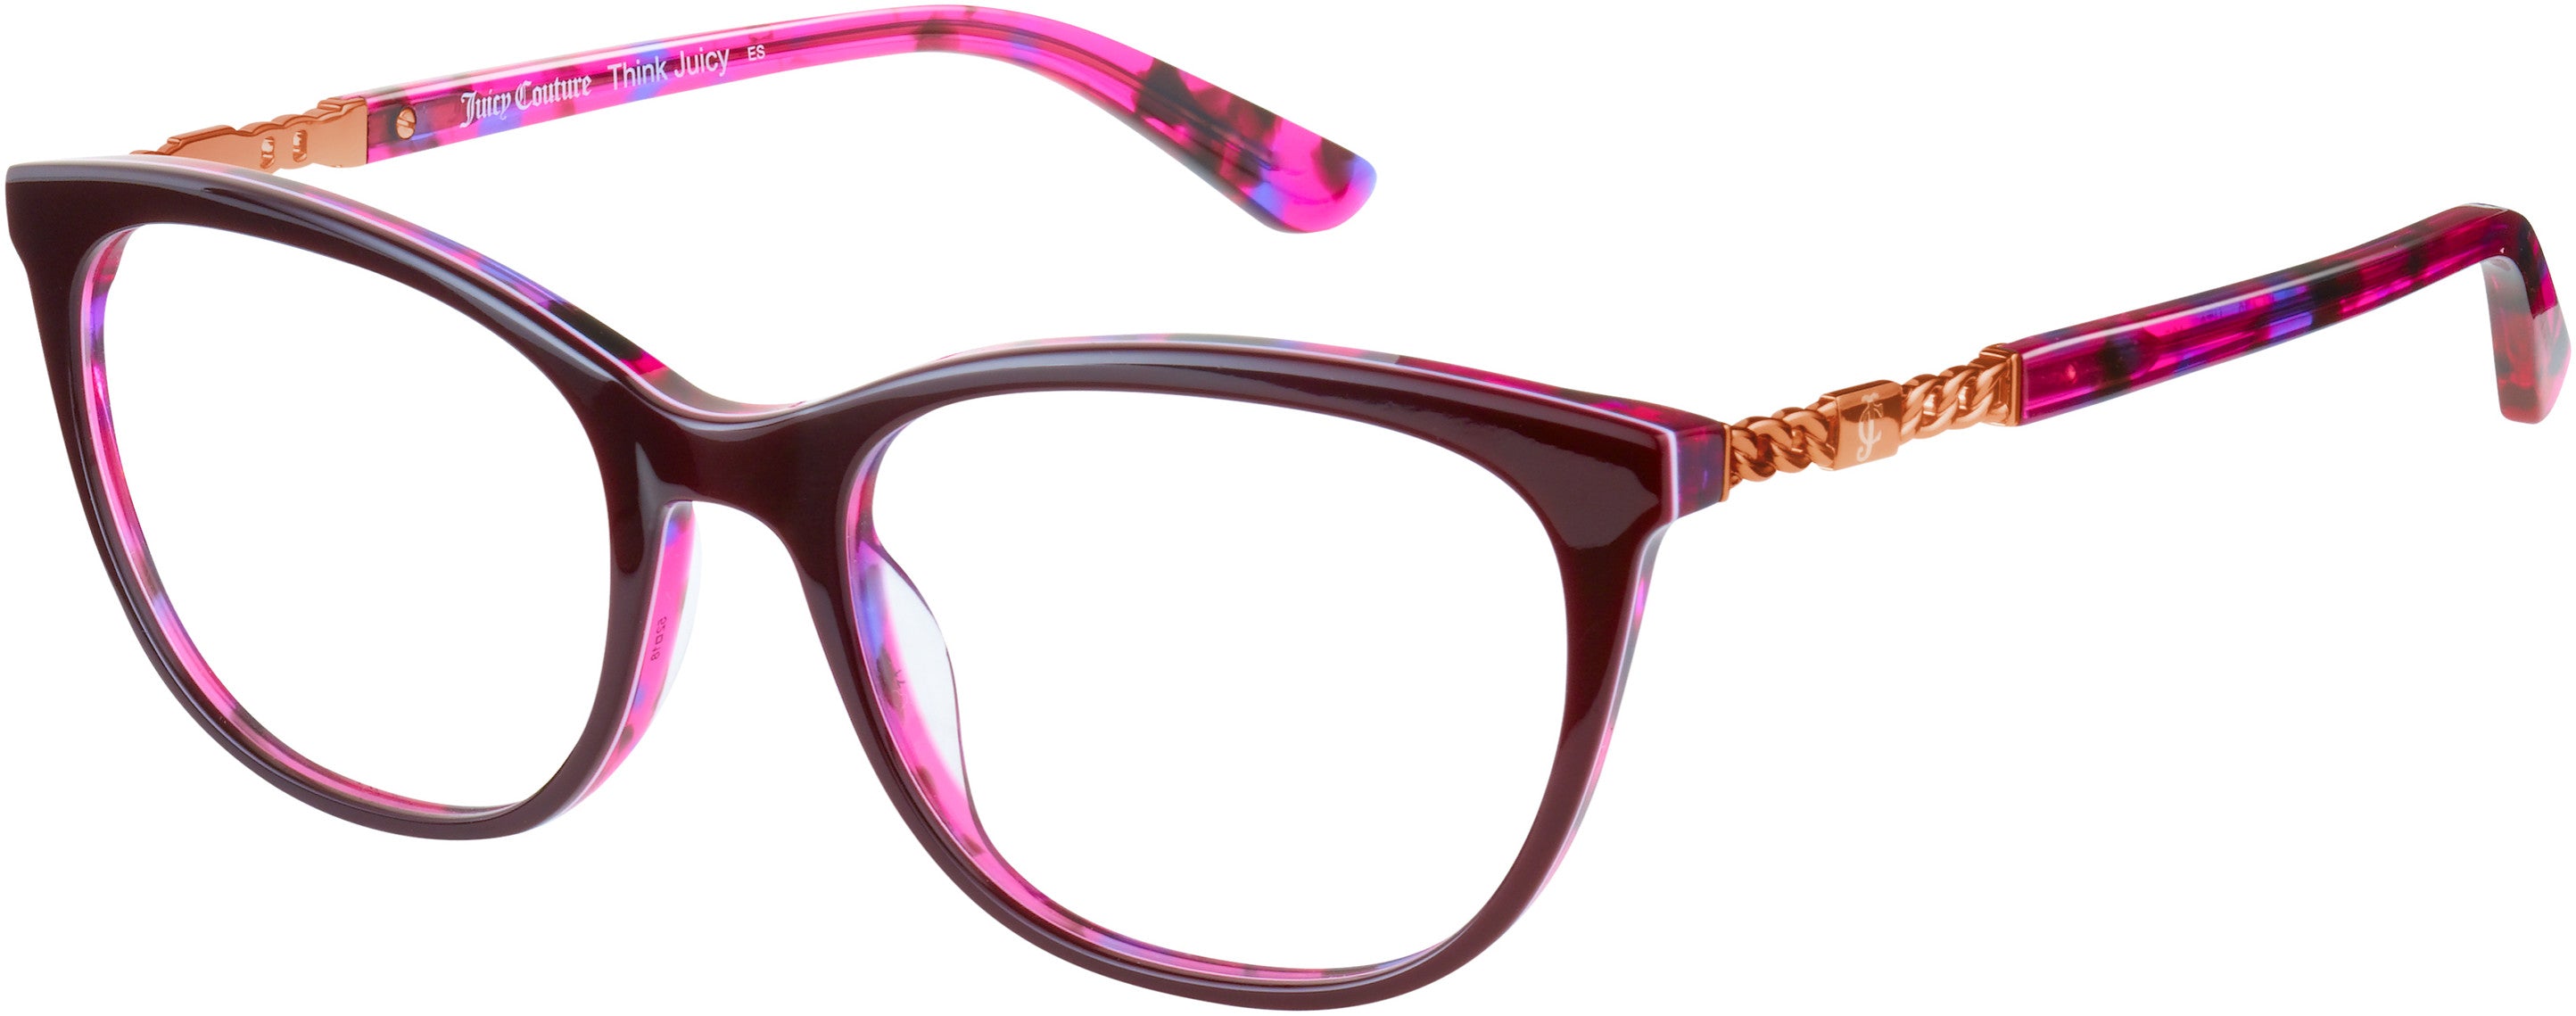 Juicy Couture Juicy 173 Square Eyeglasses 0HT8-0HT8  Pink Havana (00 Demo Lens)